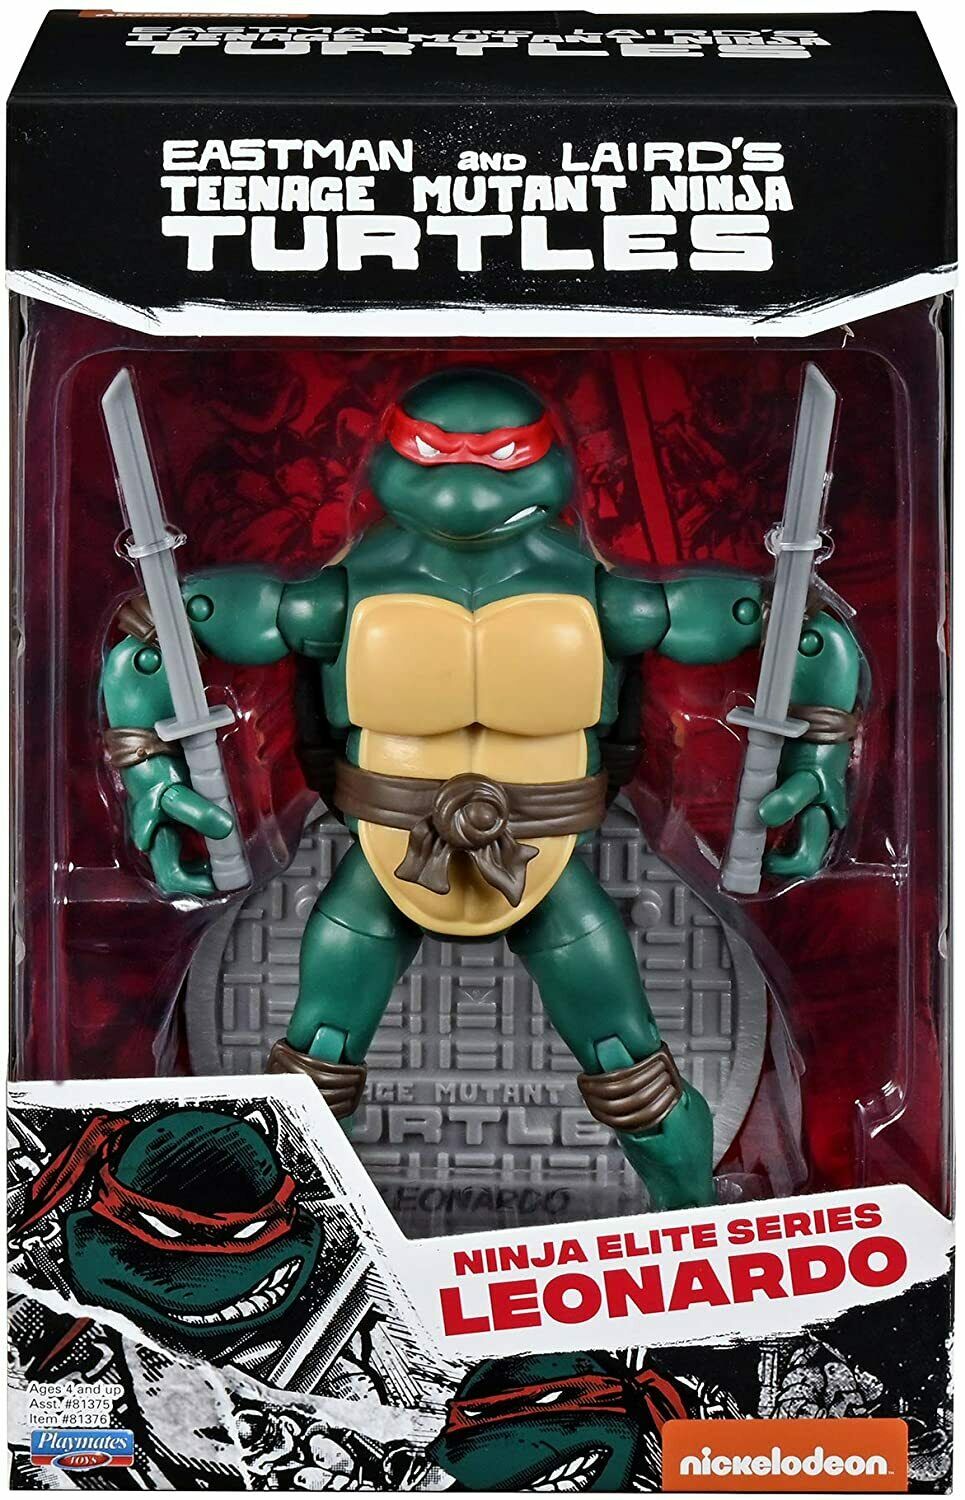 Teenage Mutant Ninja Turtles TMNT Elite Series PX Exclusive Leonardo Action Figure - Playmates